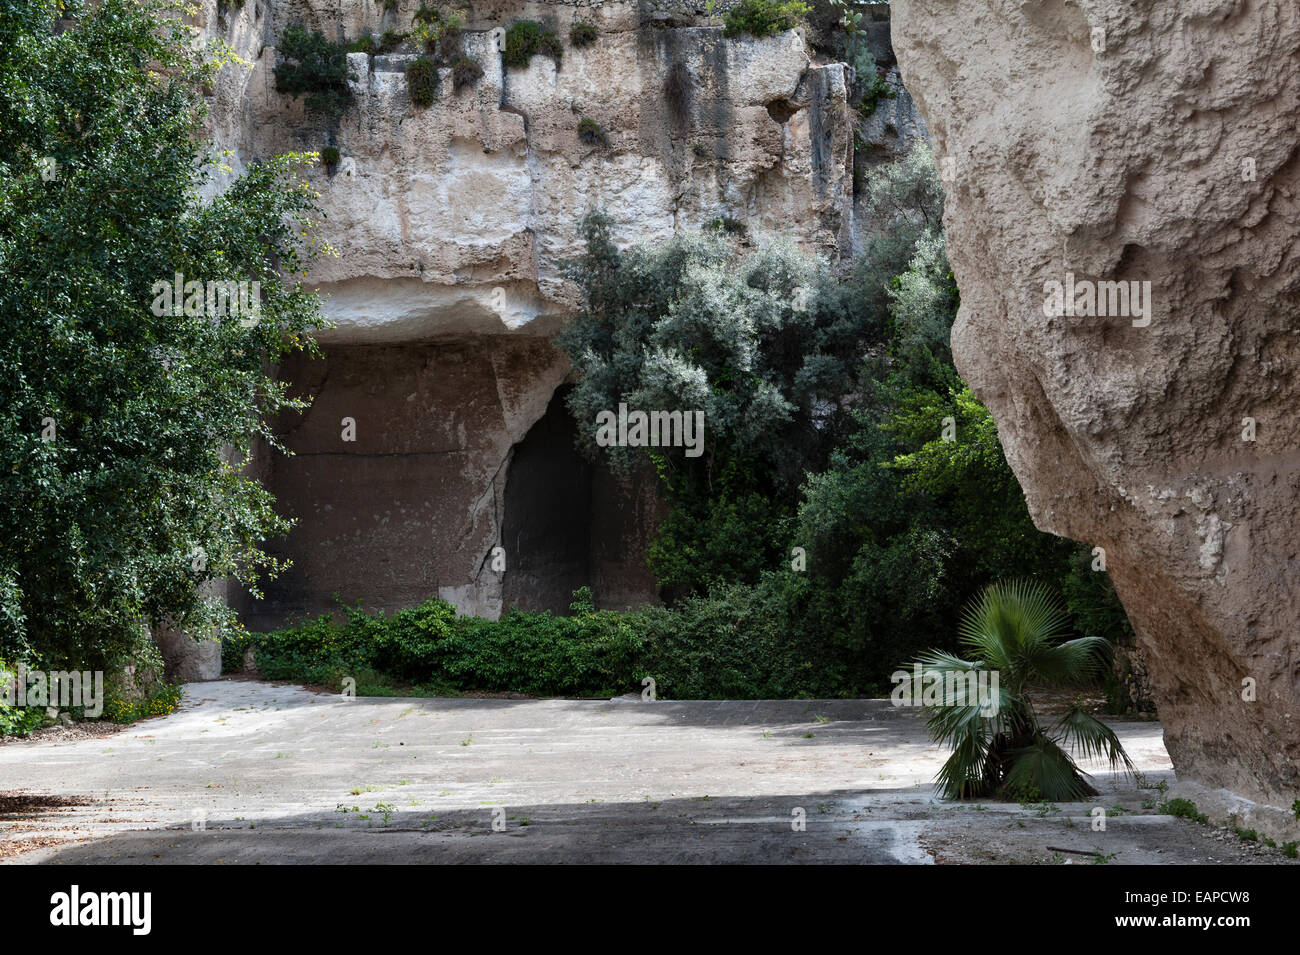 Latomia dei Cappuccini, Syrakus (Siracusa), Sizilien, Italien. Ein riesiger griechischer Steinbruch aus dem 6. Jahrhundert v. Chr., der nach 1588 als Garten von Kapuzinermönchen genutzt wurde Stockfoto